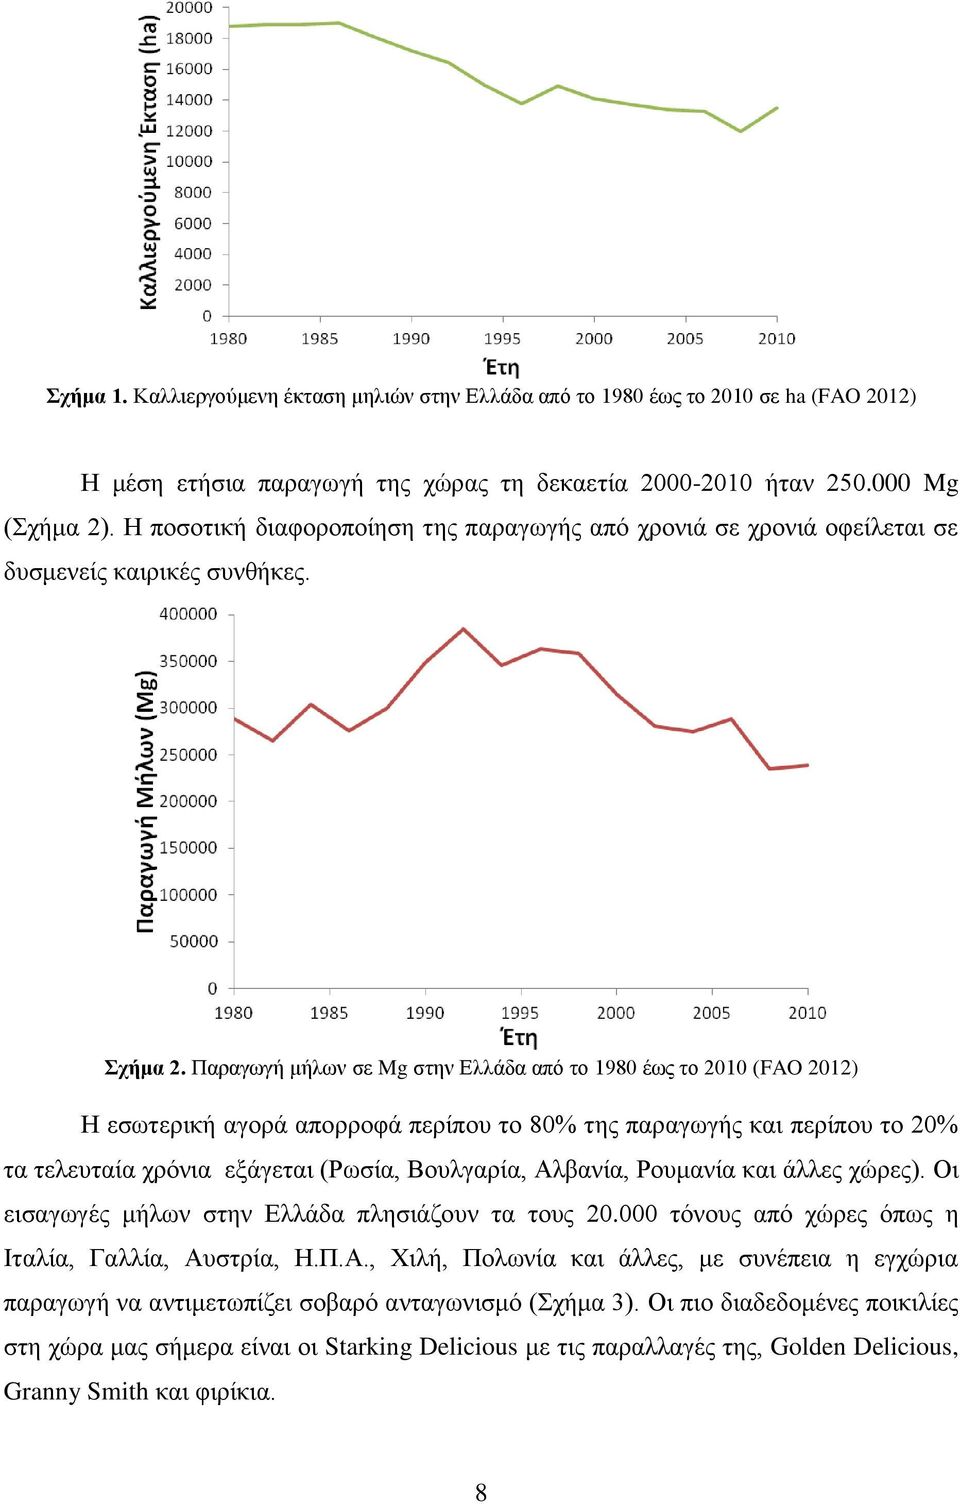 Παραγωγή μήλων σε Mg στην Ελλάδα από το 1980 έως το 2010 (FAO 2012) Η εσωτερική αγορά απορροφά περίπου το 80% της παραγωγής και περίπου το 20% τα τελευταία χρόνια εξάγεται (Ρωσία, Βουλγαρία, Αλβανία,